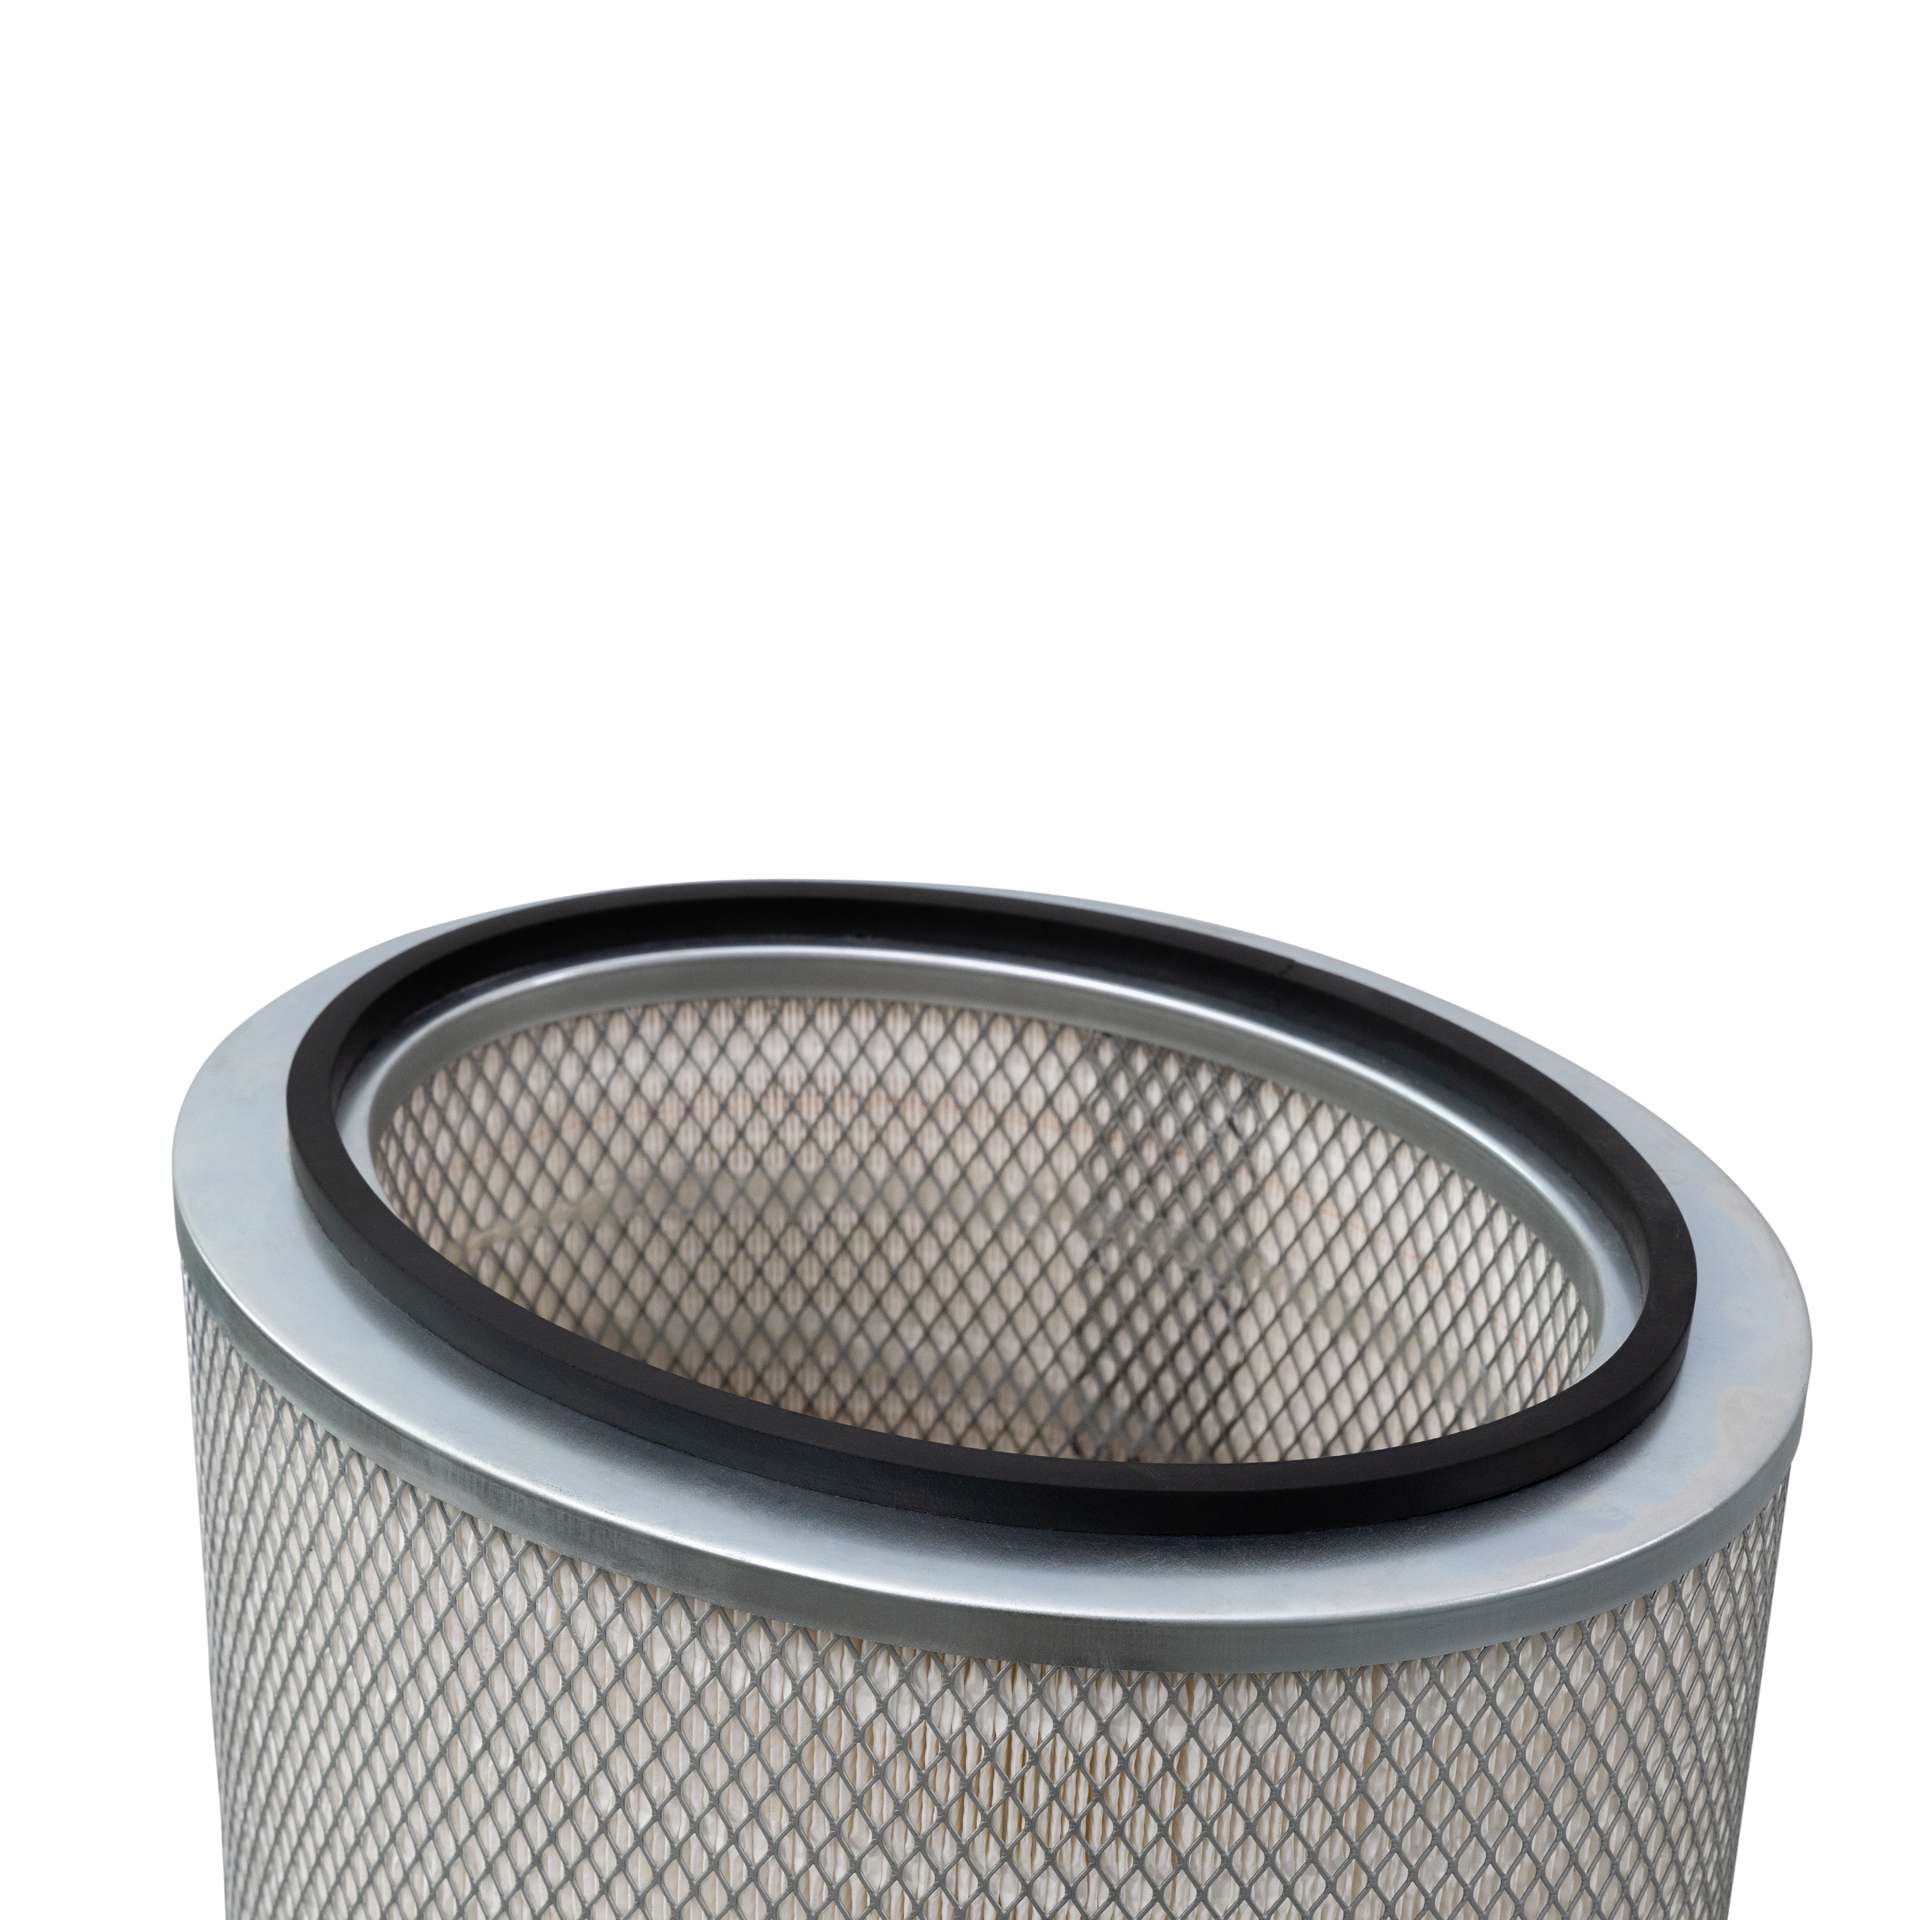 Filterpatrone passend für: Downflo Oval Cartridge Dust Collectors, DFPRO, DFO - 365x289x660 mm - Alternative zu DONALDSON 2625115, 2625112-000-440, 2627344-000-440, P191920 - Detailansicht